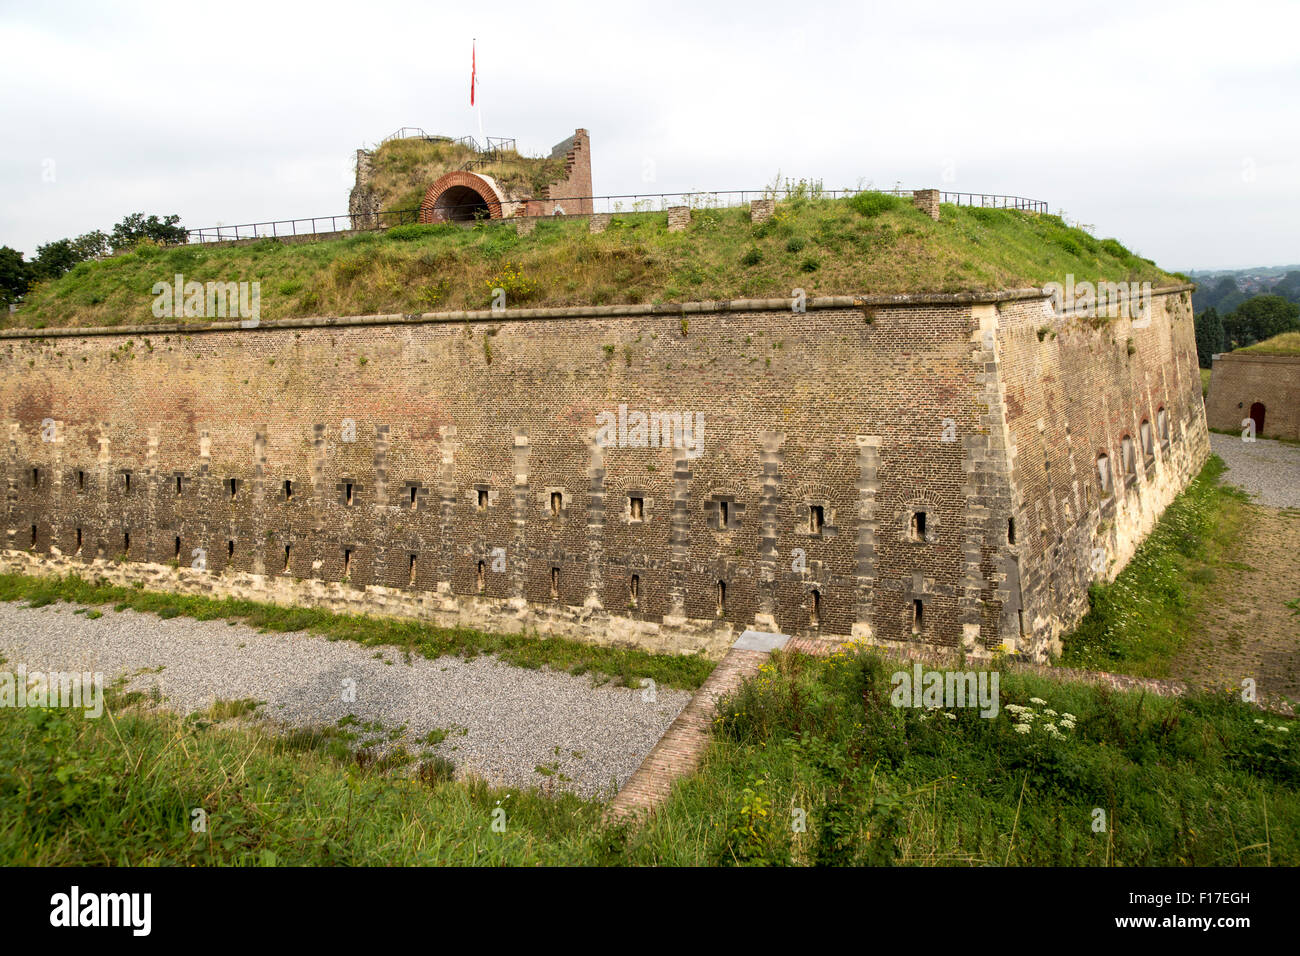 Fort Sint Pieter, Saint Peter Fort, Maastricht, Limburg province, Netherlands, Stock Photo